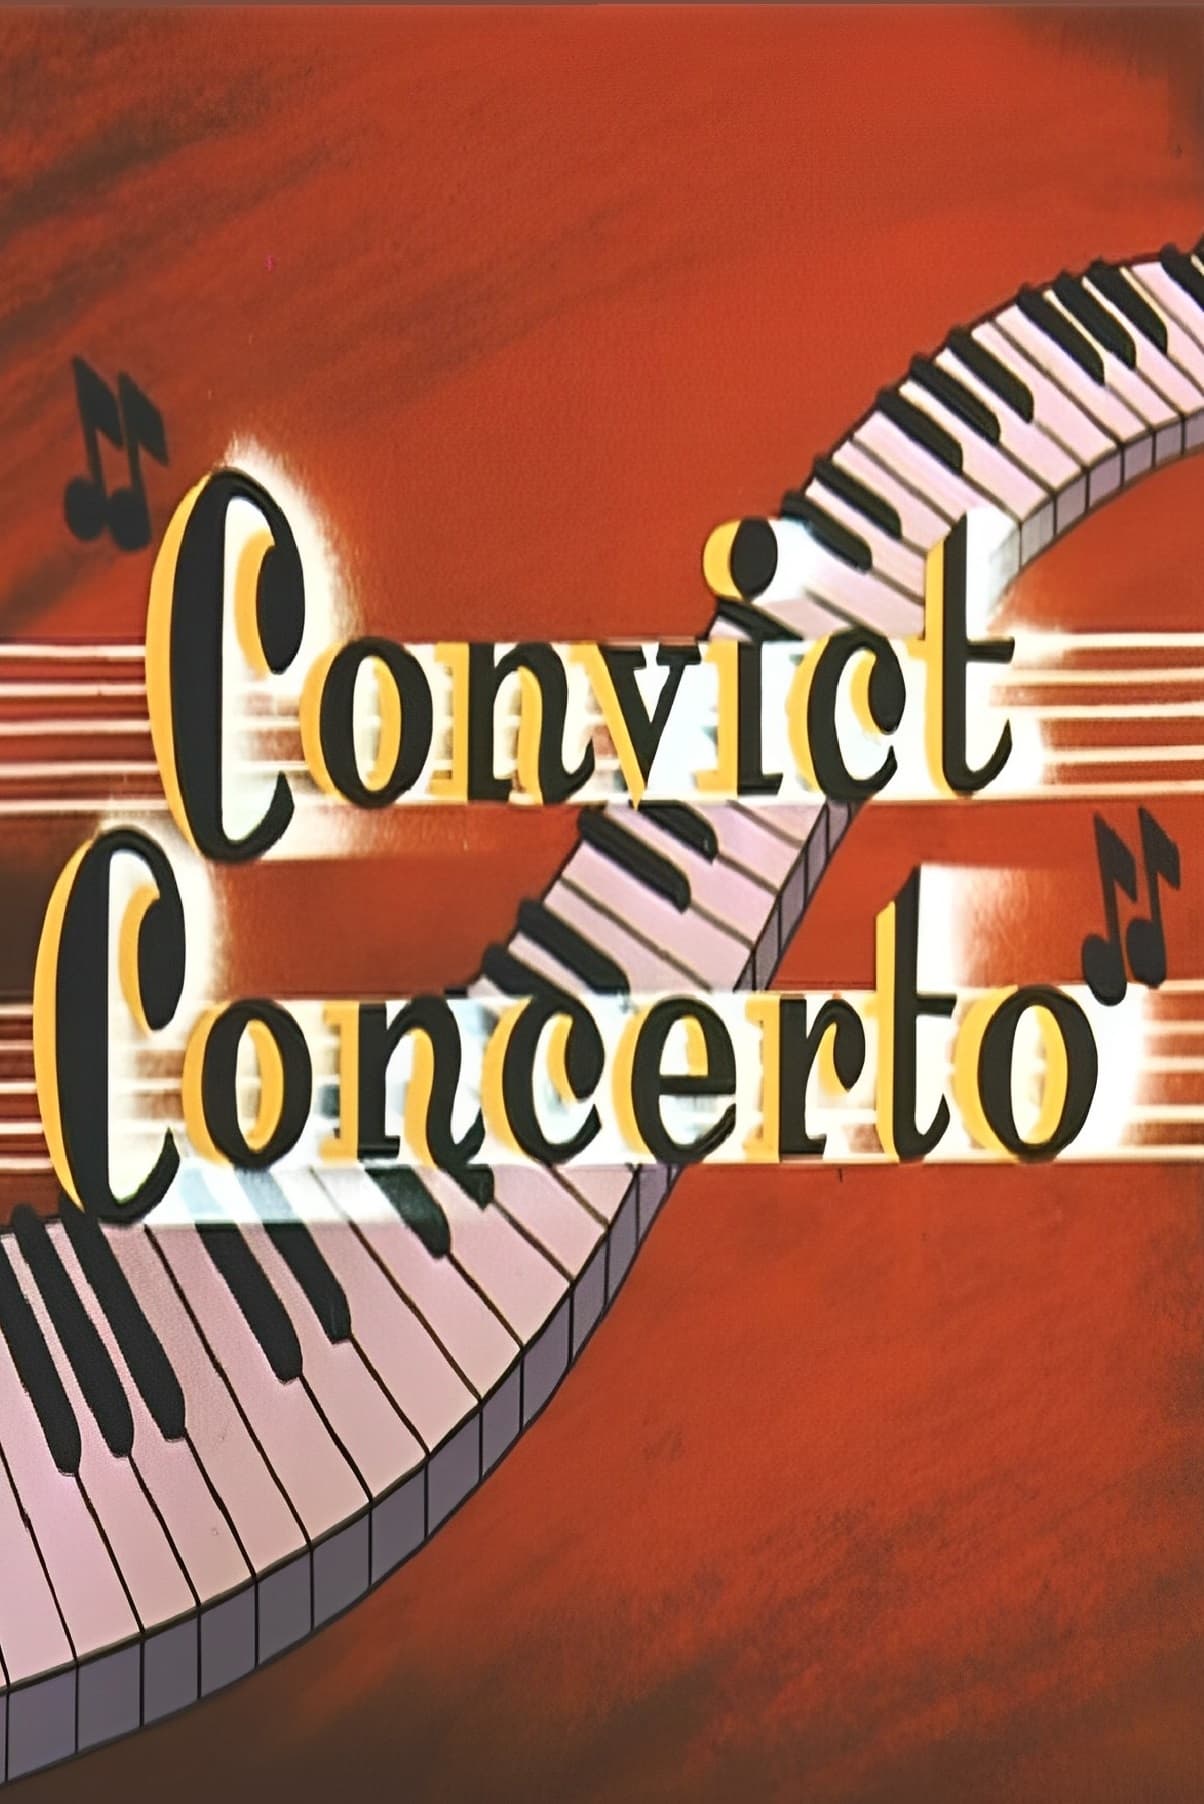 Convict Concerto (1954)